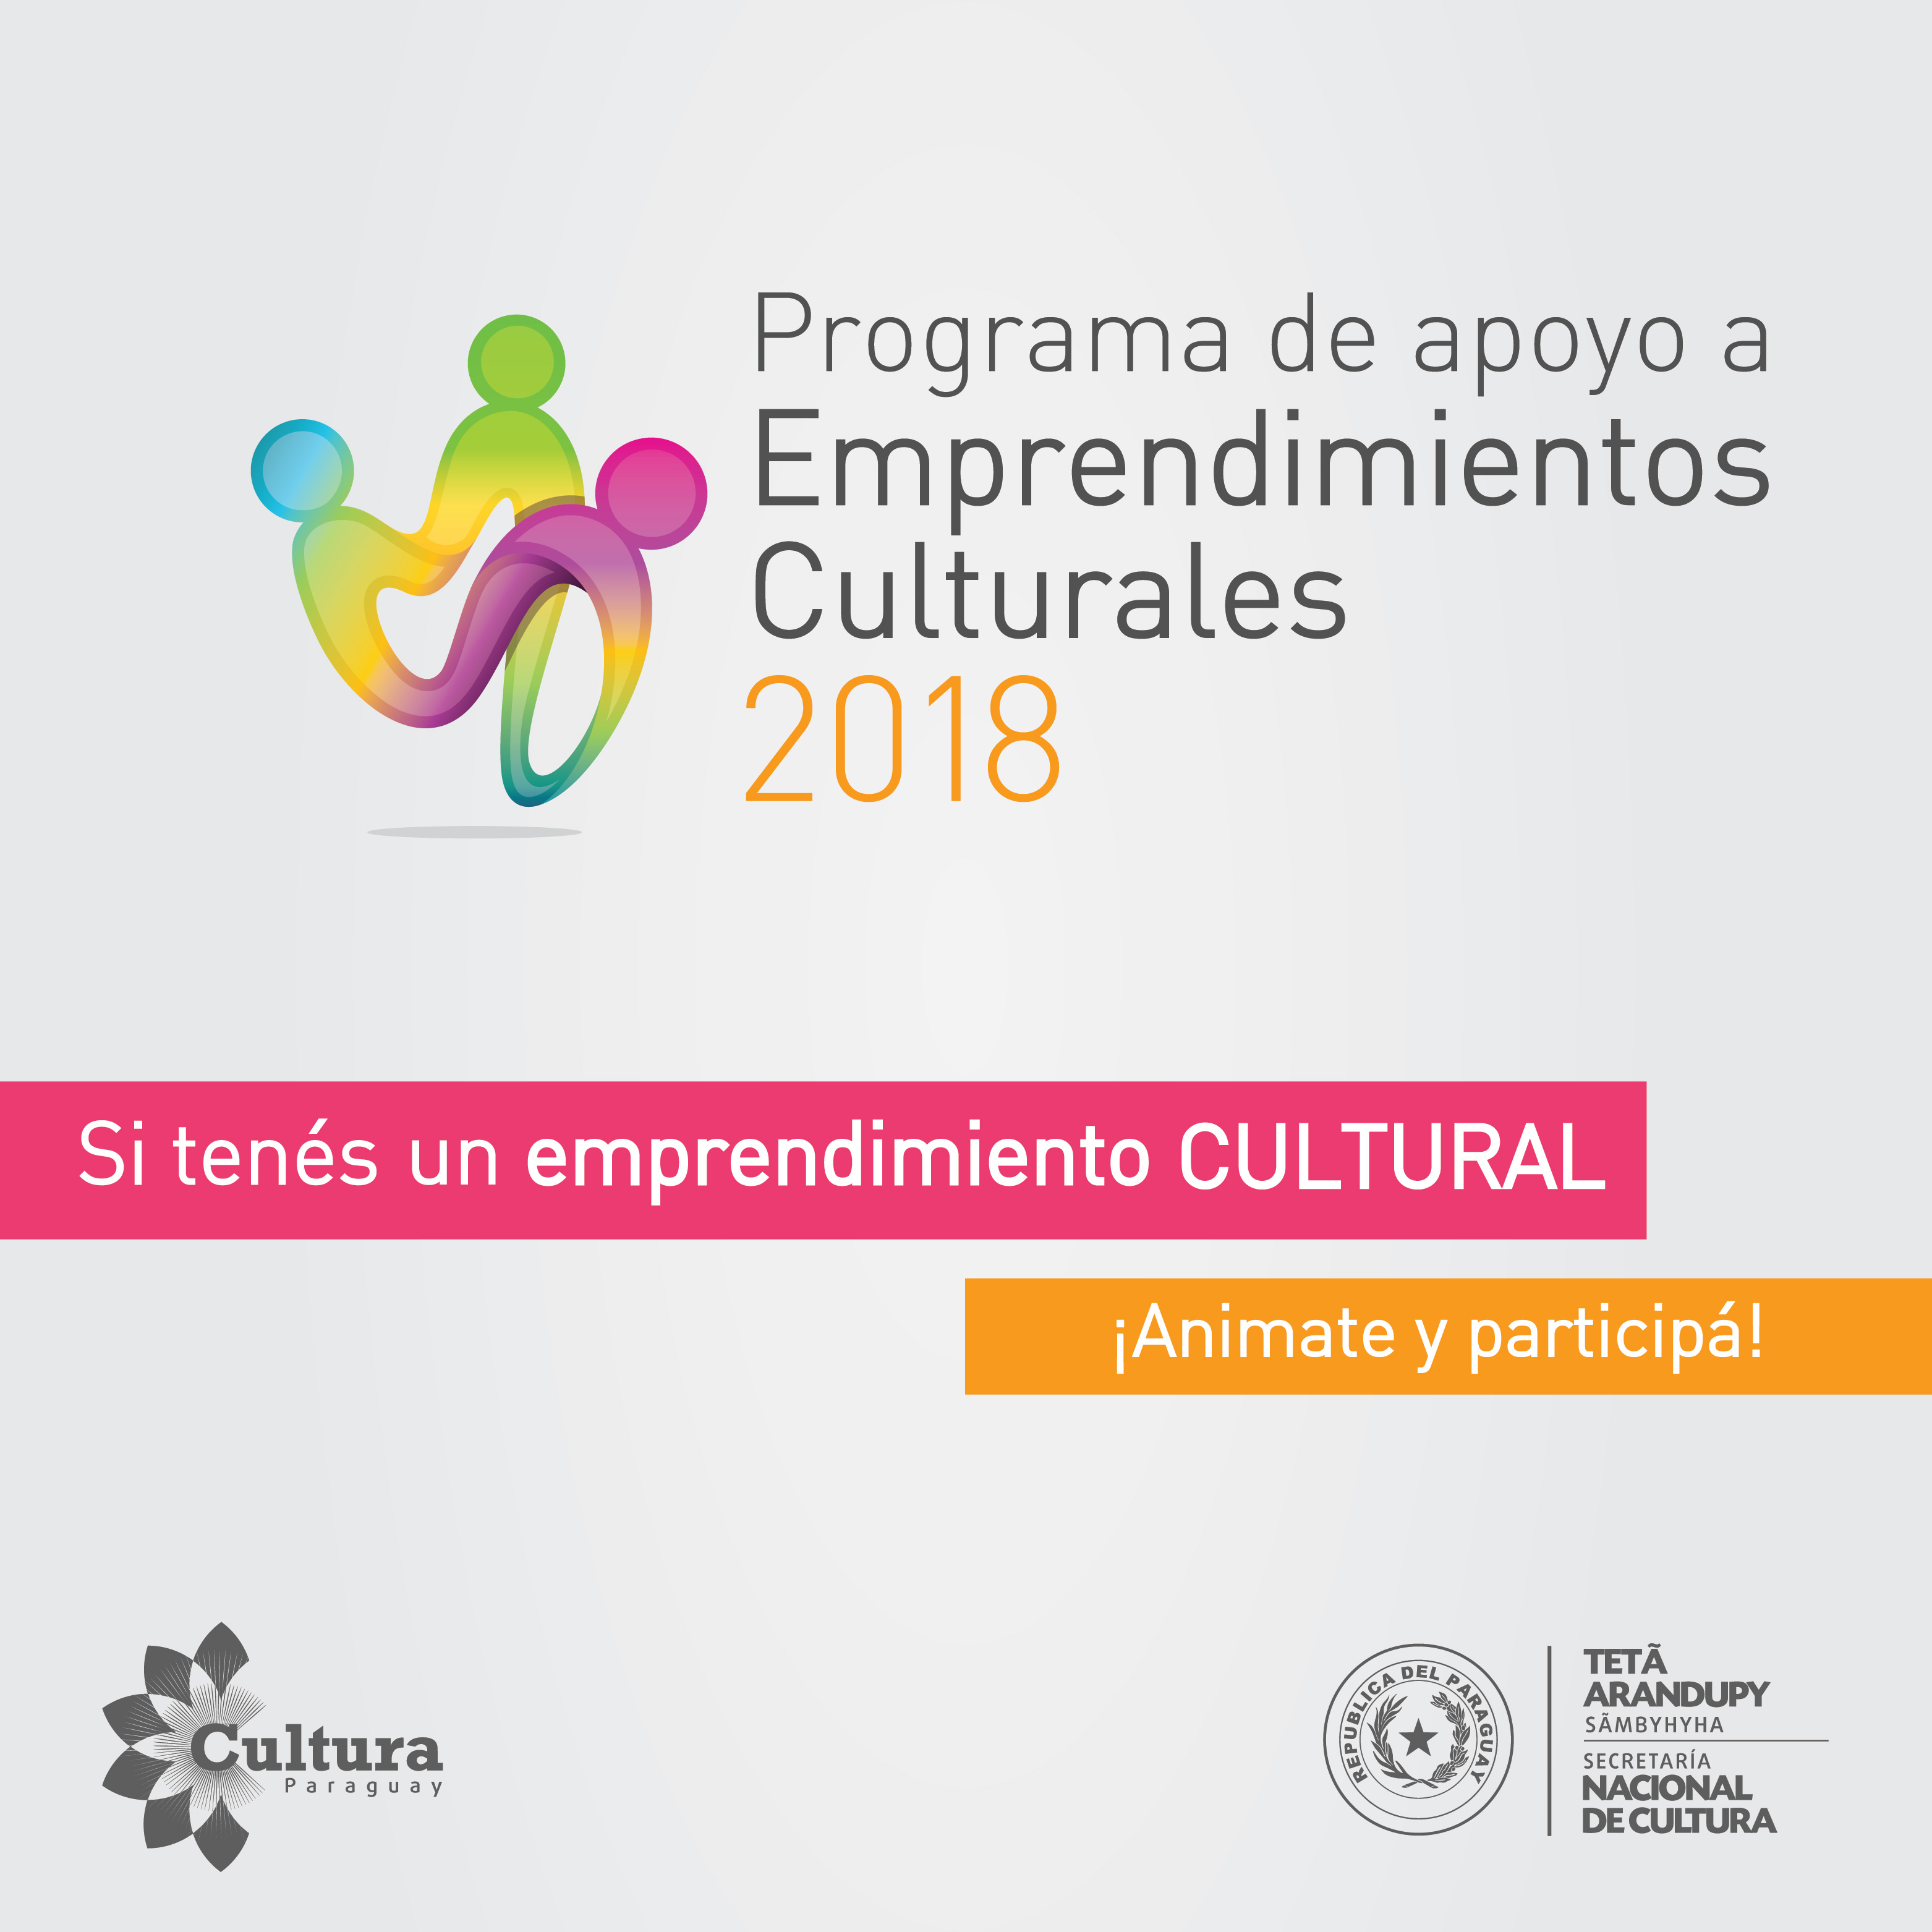 Hasta el 13 de abril se reciben proyectos para el Programa de Apoyo a Emprendimientos Culturales 2018 imagen